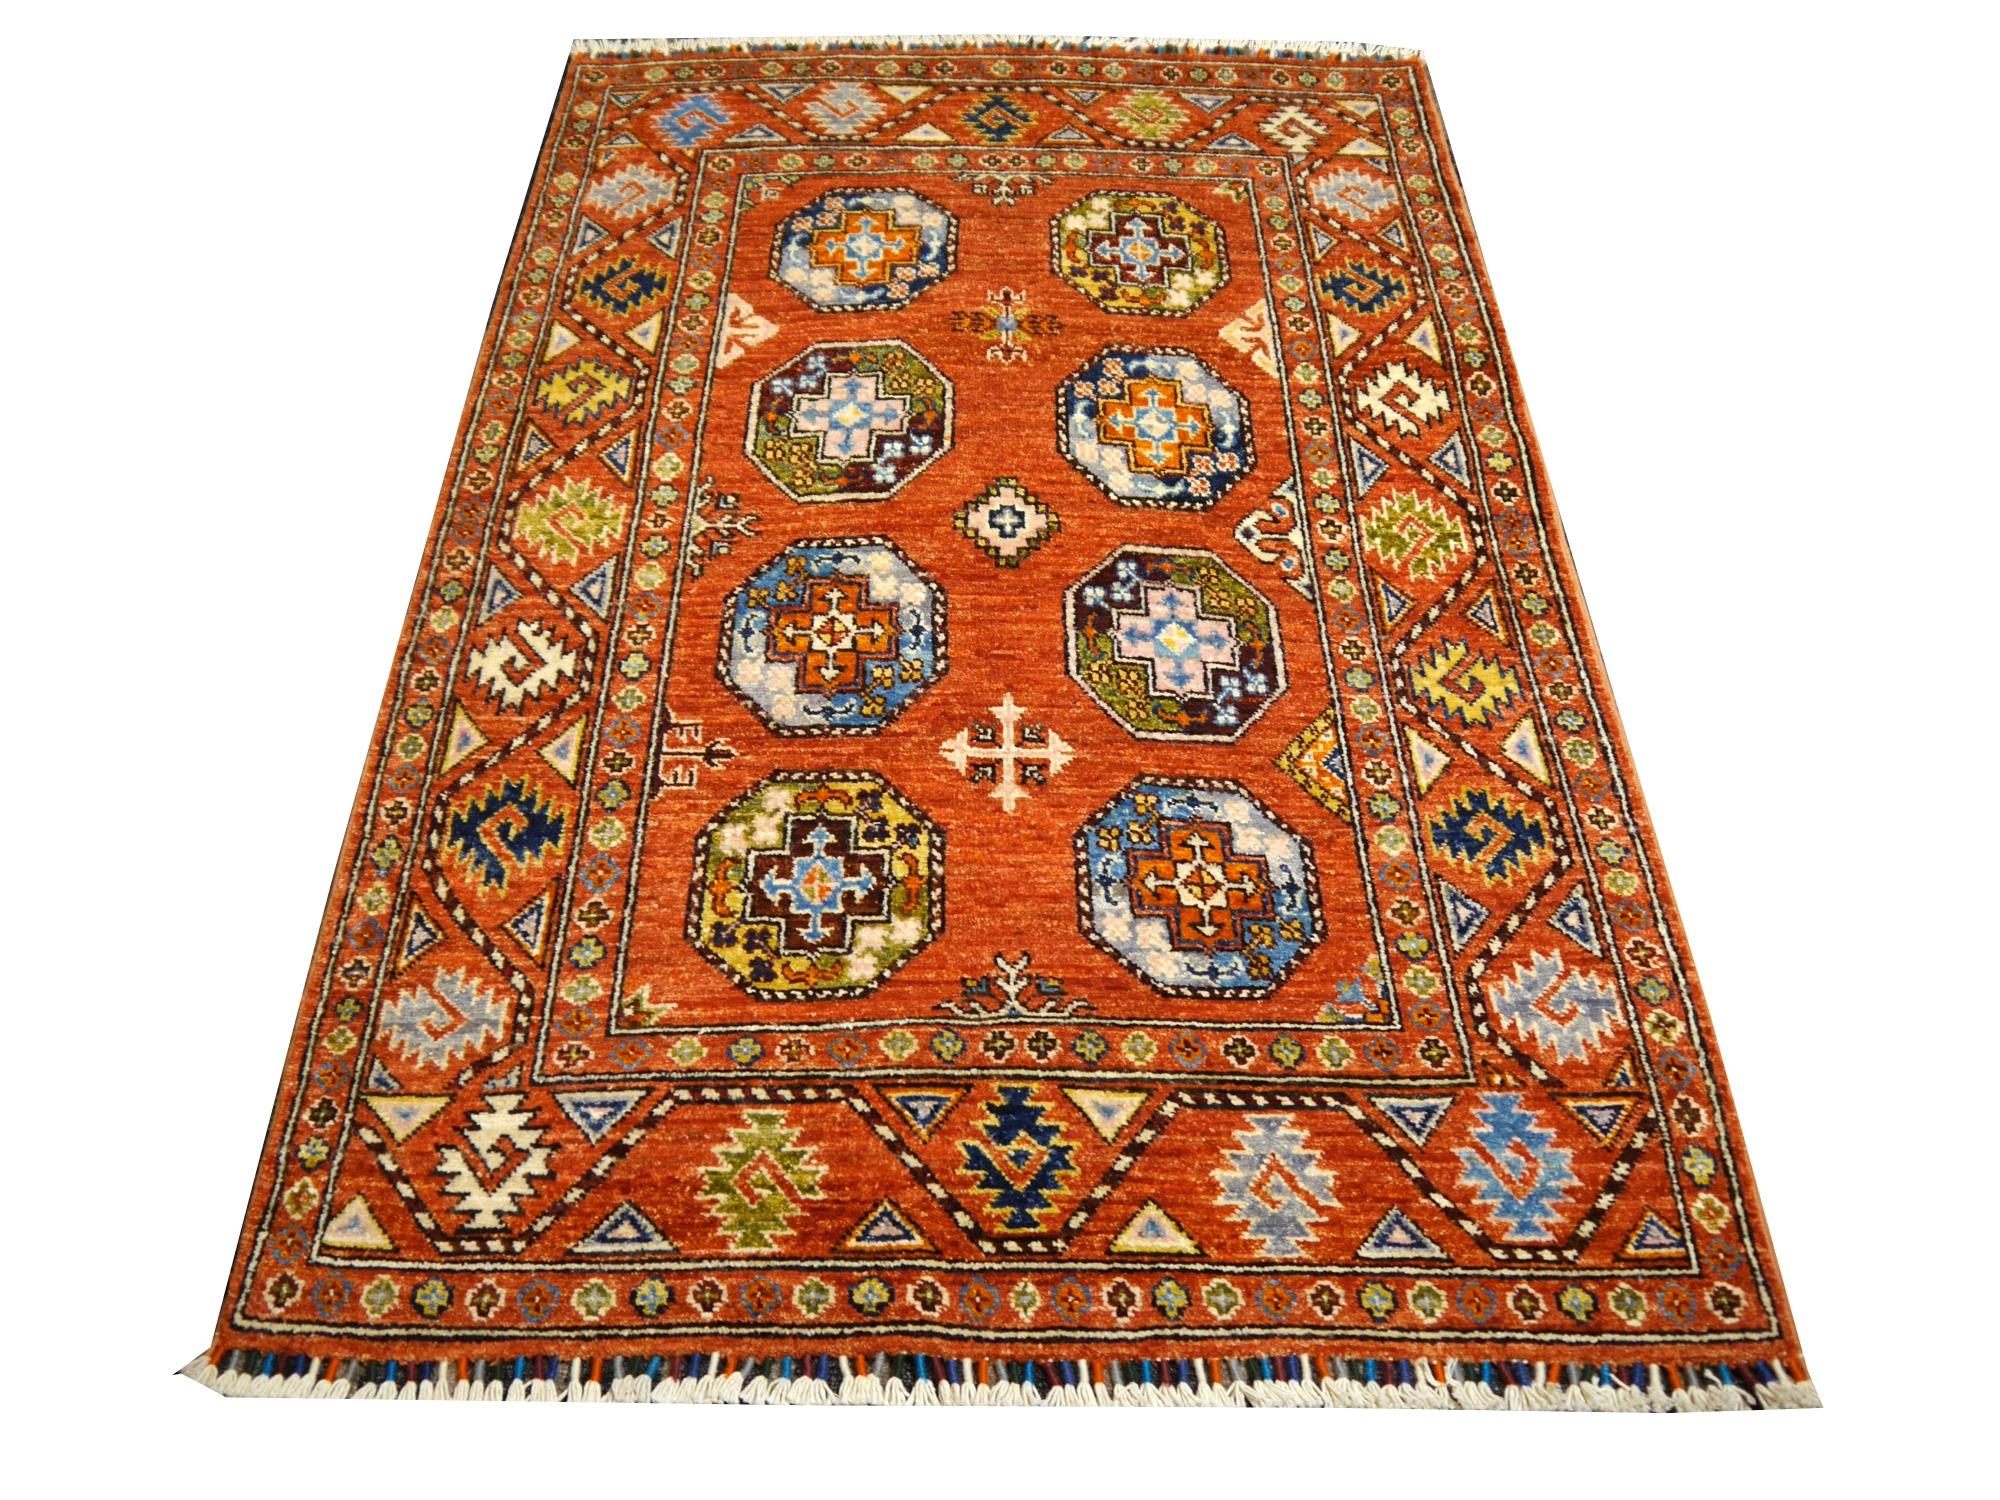 Ersari Teppich Arijana Afghan 5.1 x 3.3 ft handgeknüpfte Wolle
Ersari-Teppiche werden von turkmenischen Stämmen in Nordafghanistan und Usbekistan hergestellt.
Arijana-Teppiche sind von hoher Qualität, haben Farbpigmente aus natürlichen Pflanzen oder